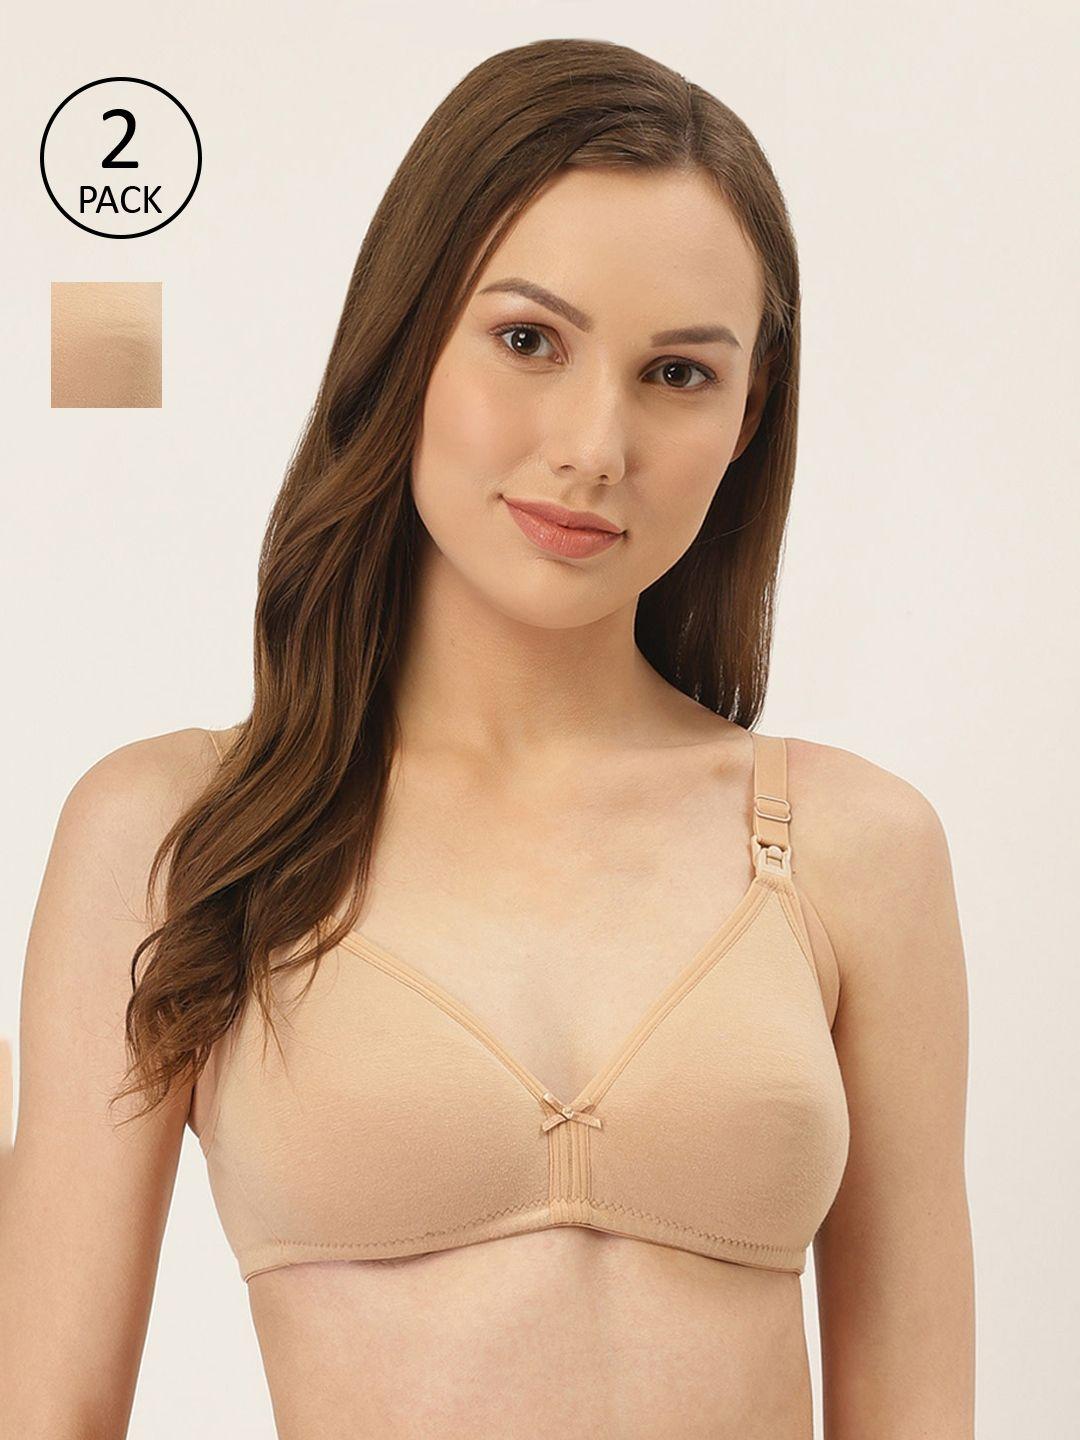 inner sense women nude solid bra pack of 2 imb006e_6e--skin